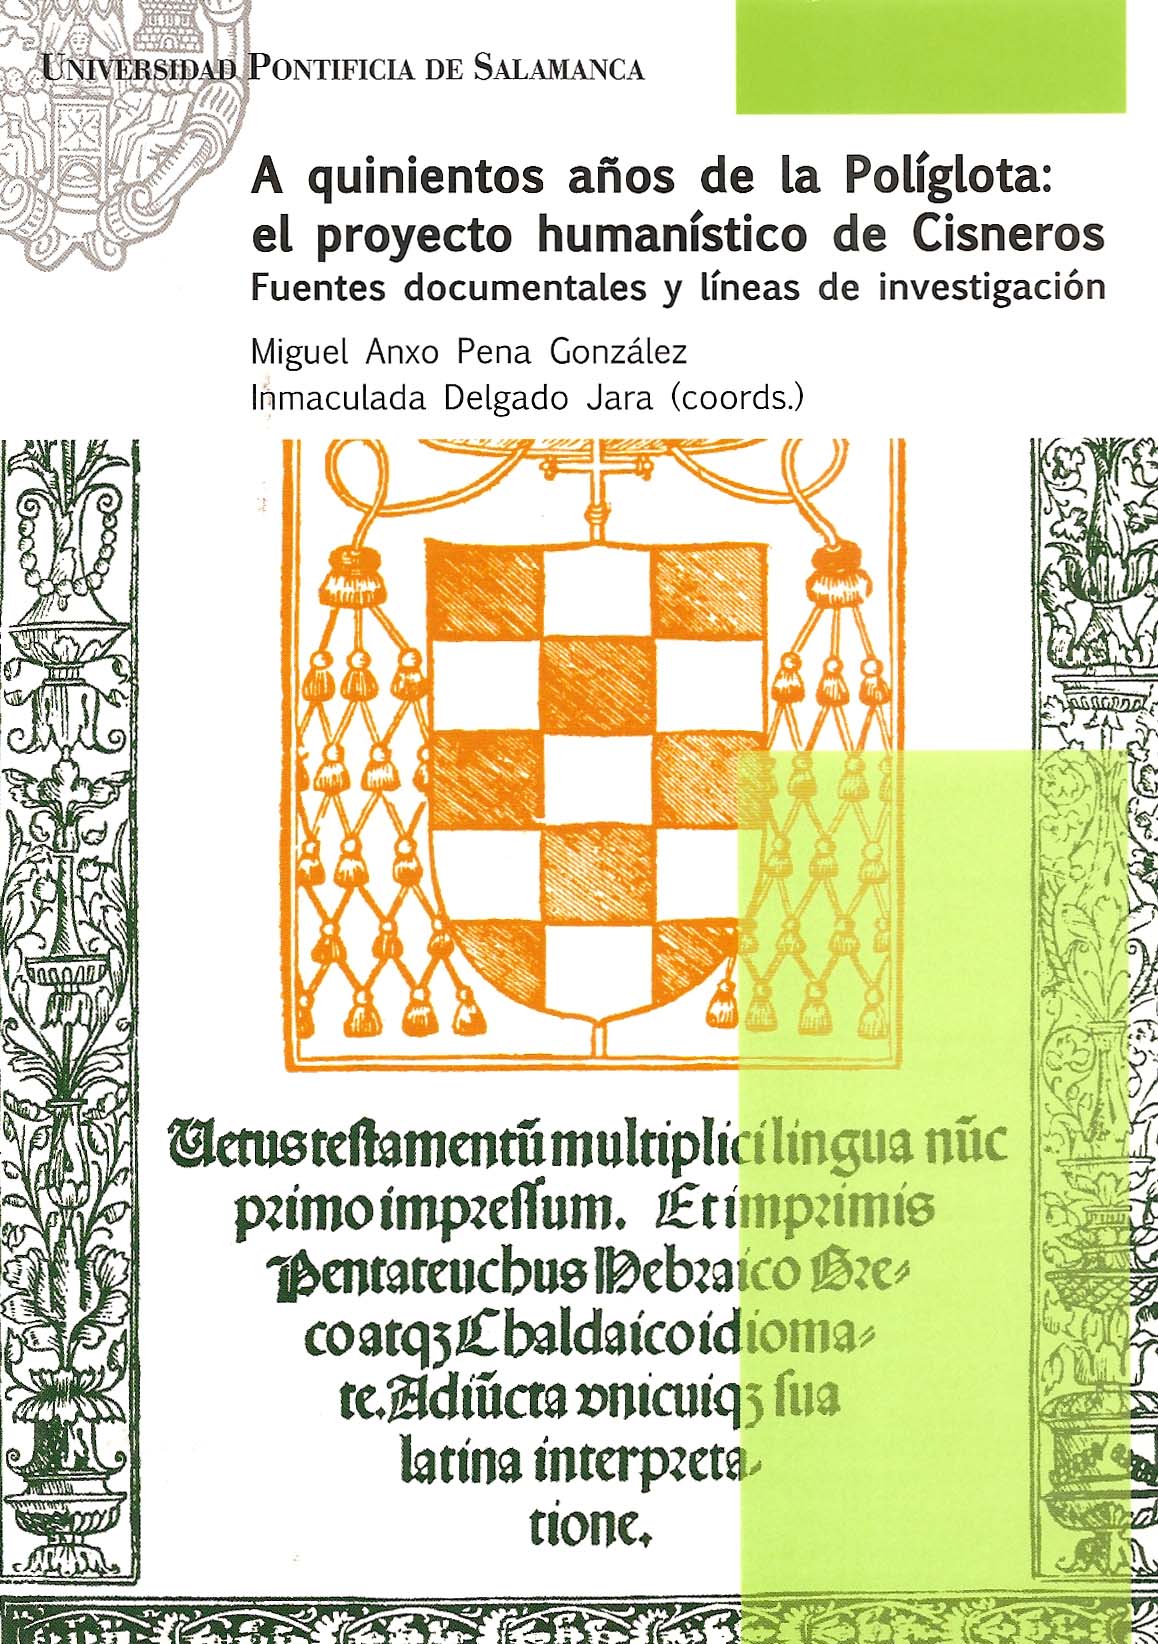 Imagen de portada del libro A quinientos años de la Políglota